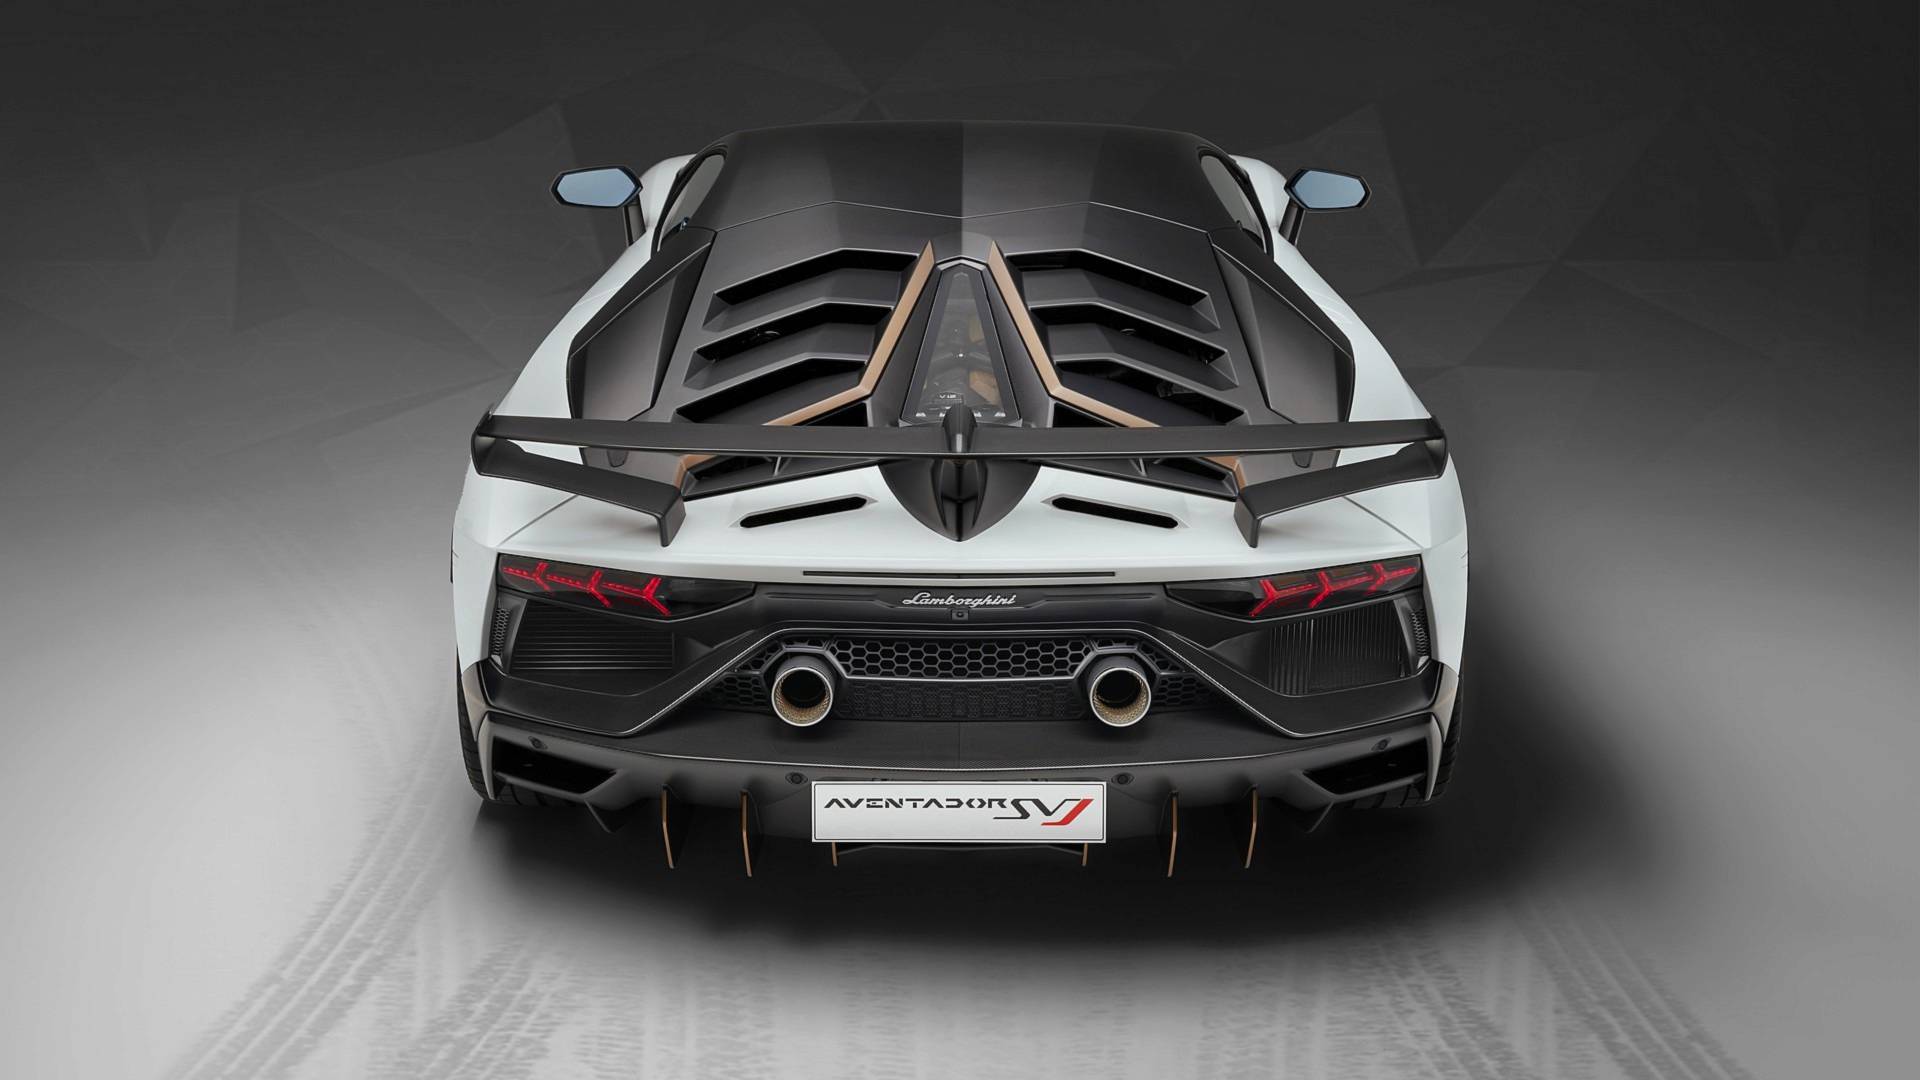 2022 Lamborghini Aventador Succesor Confirmed With Hybrid V12 and e-AWD -  autoevolution